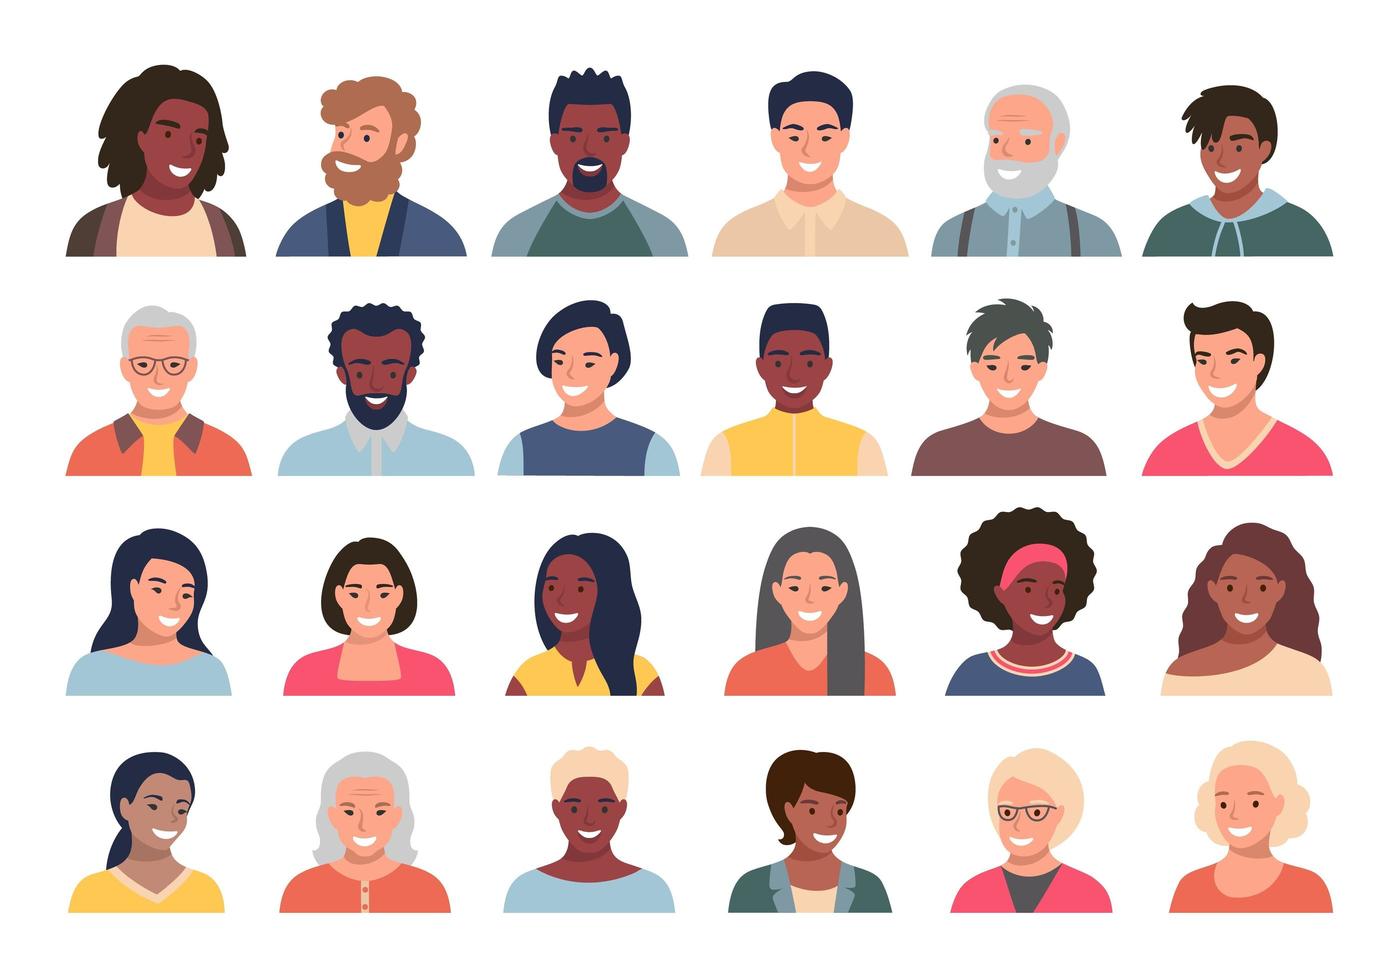 conjunto de personas, avatares, jefes de personas de diferentes etnias y edades en estilo plano. Colección de caras de personas de redes sociales multinacionalidad. vector